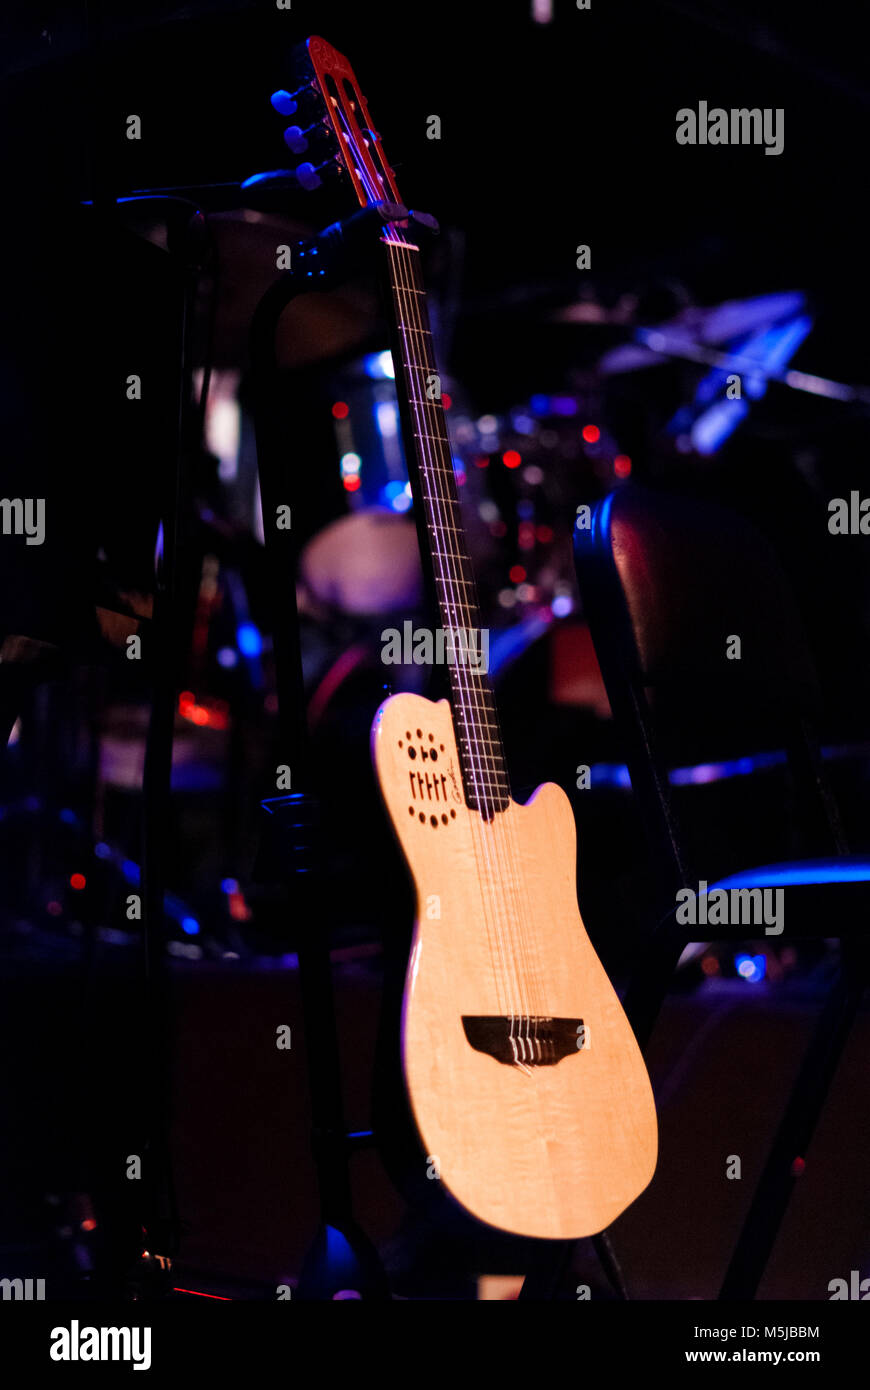 Guitarra, batería e instrumentos en escenario / Guitar, drums, and other instruments on stage. Stock Photo